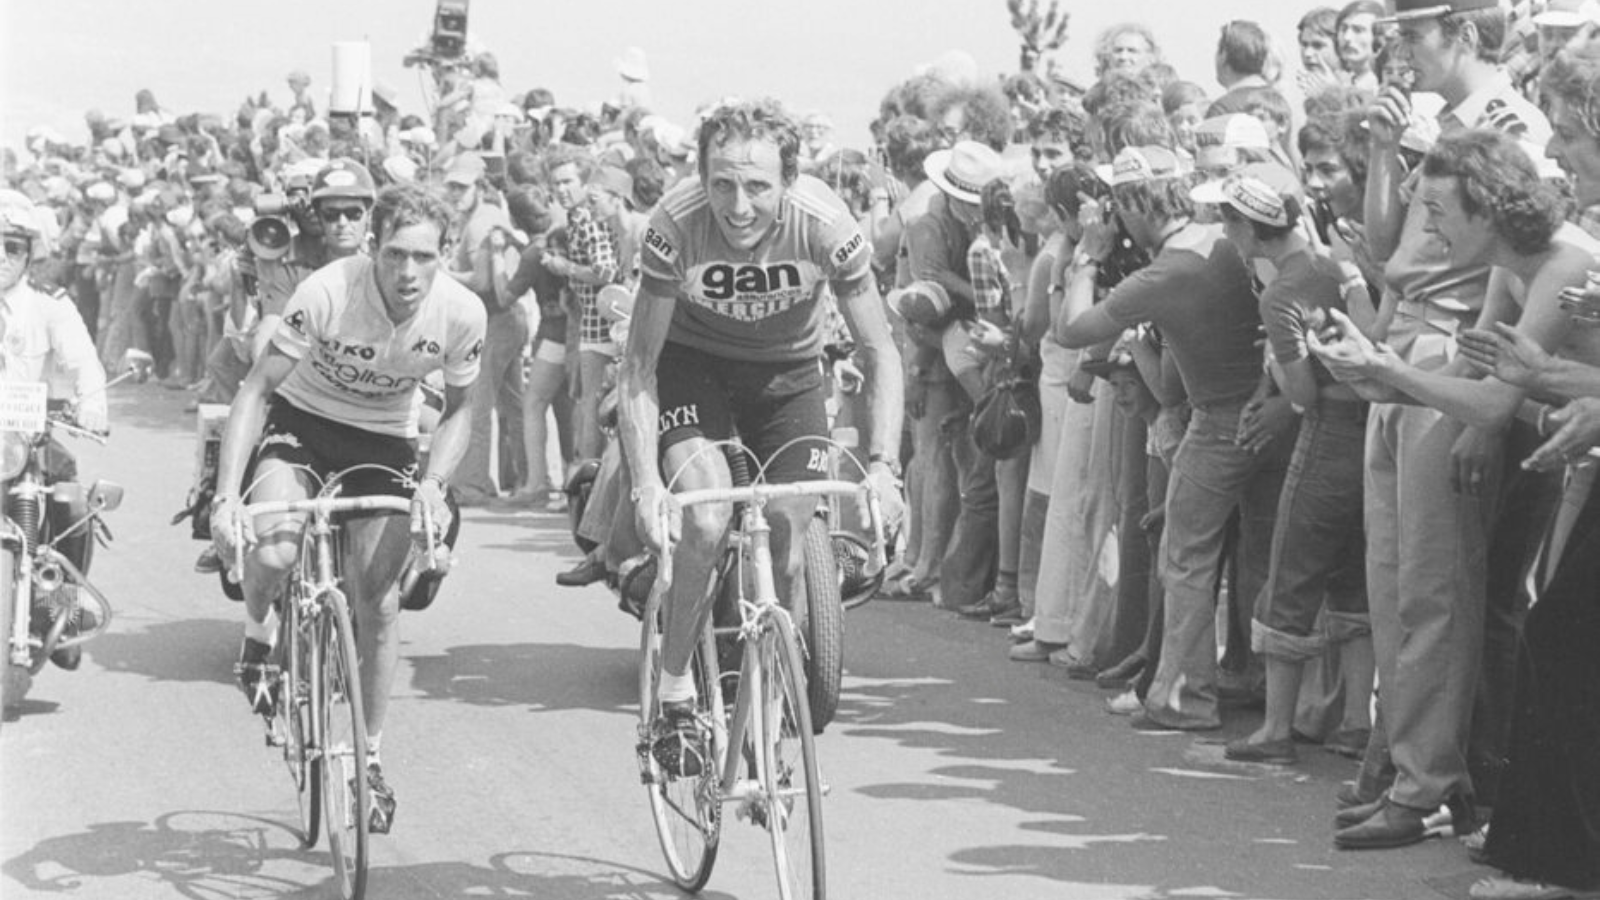 Lucien van Impe and Joop Zoetemelk on the Puy de Dome Tour de France 1976